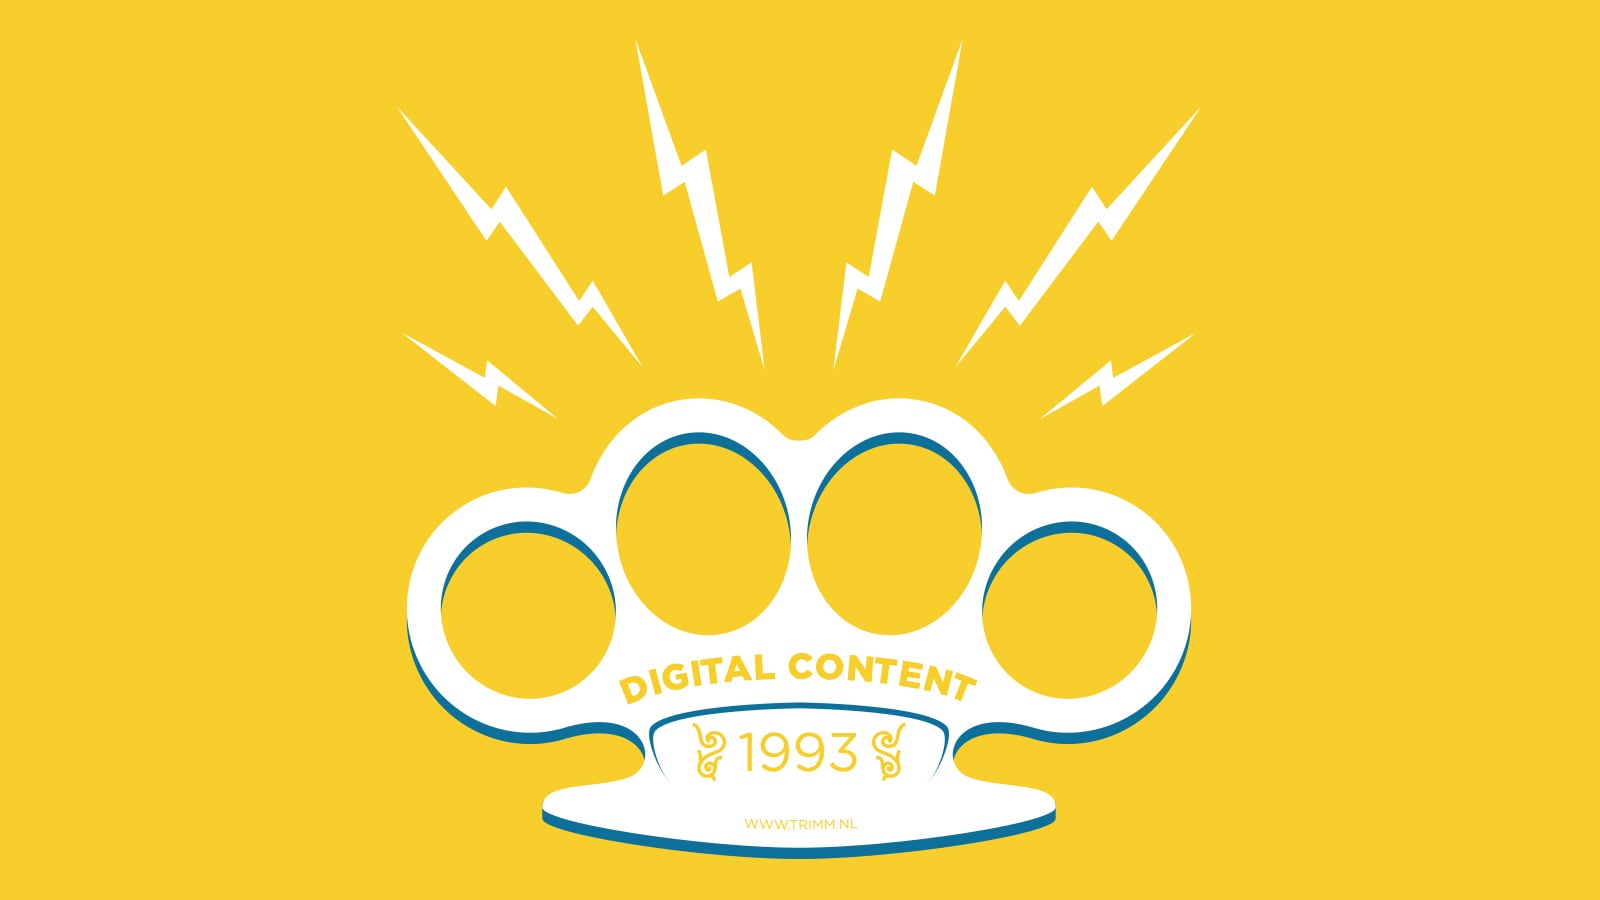 ijzersterke content op je digitale platform